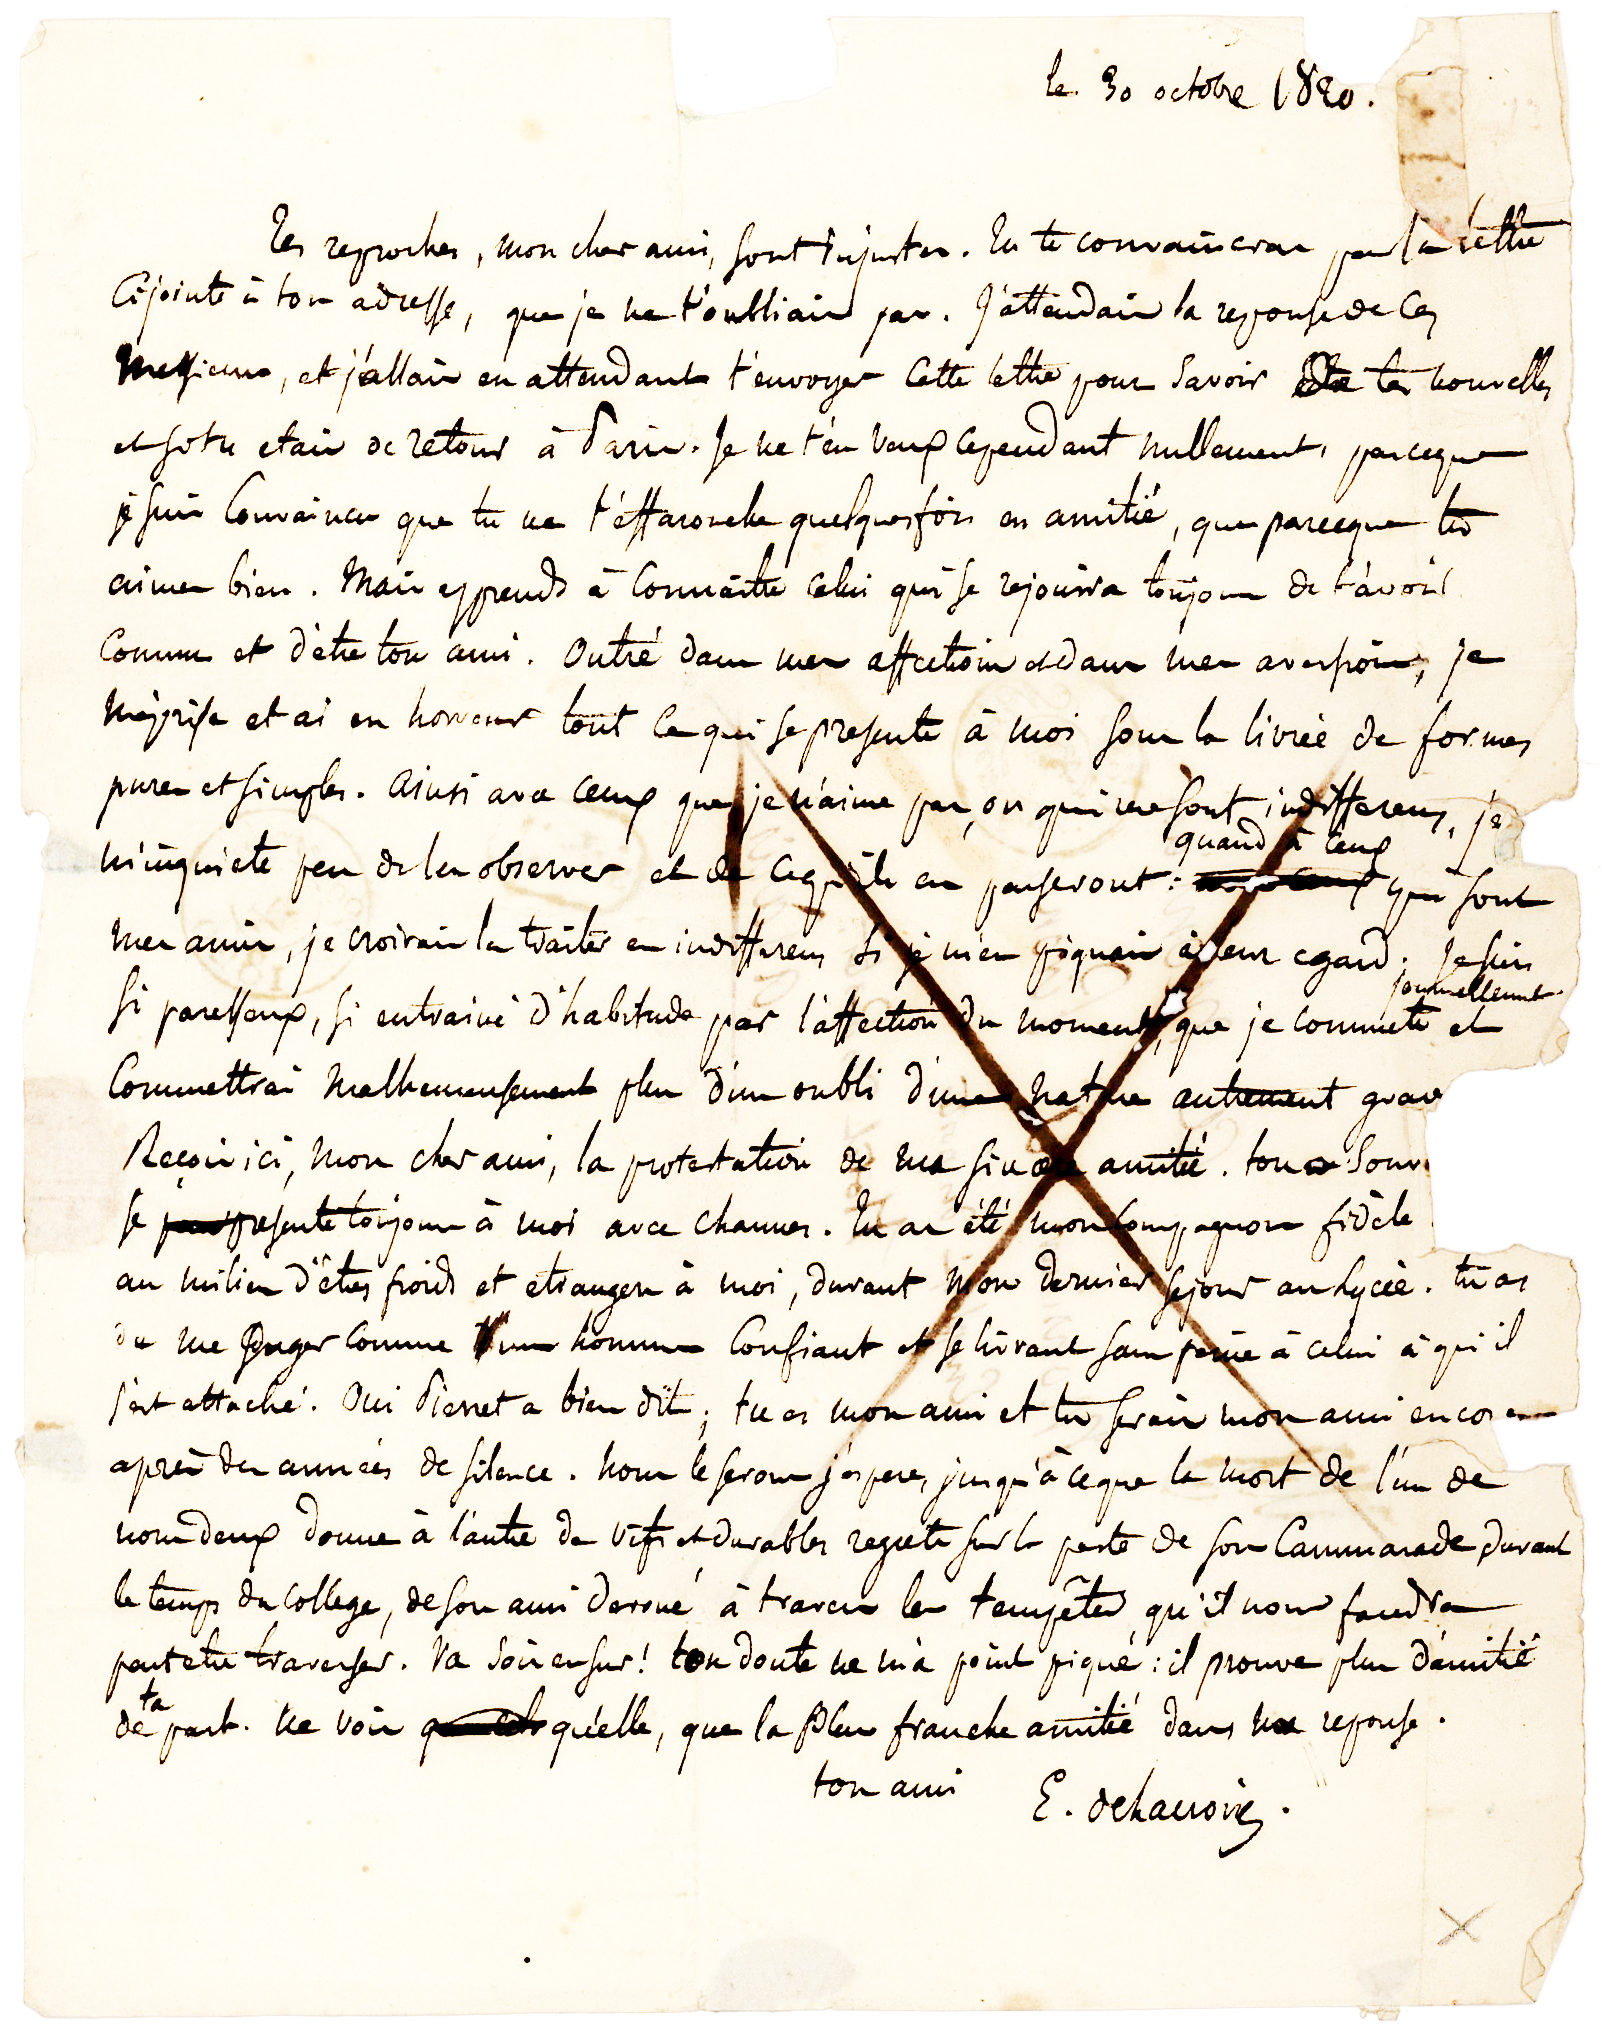 Delacroix letter